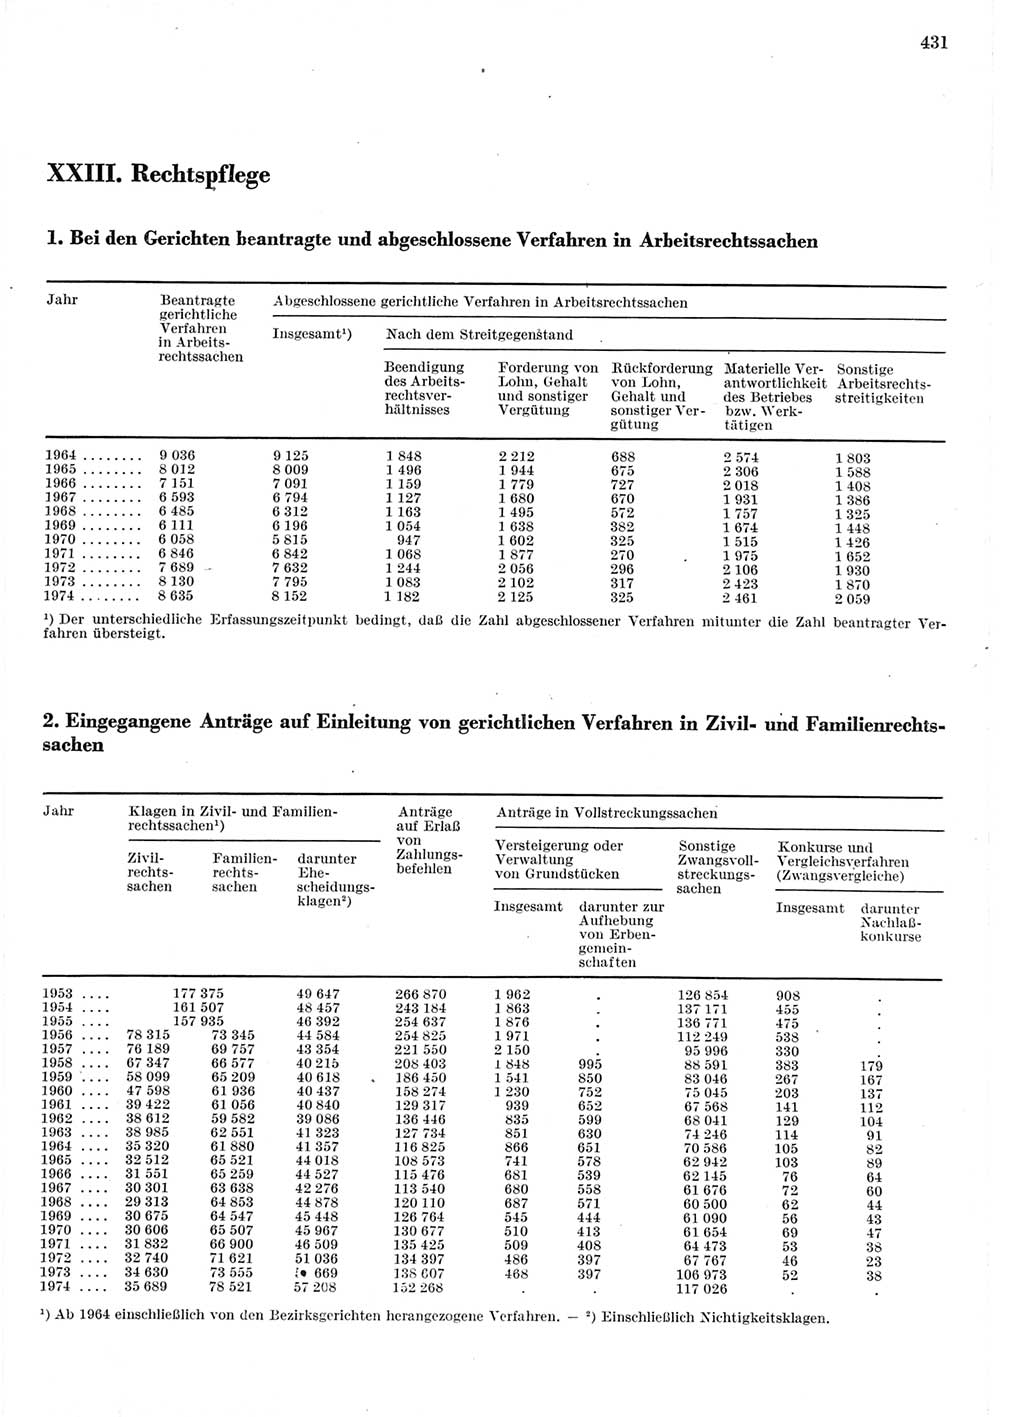 Statistisches Jahrbuch der Deutschen Demokratischen Republik (DDR) 1975, Seite 431 (Stat. Jb. DDR 1975, S. 431)